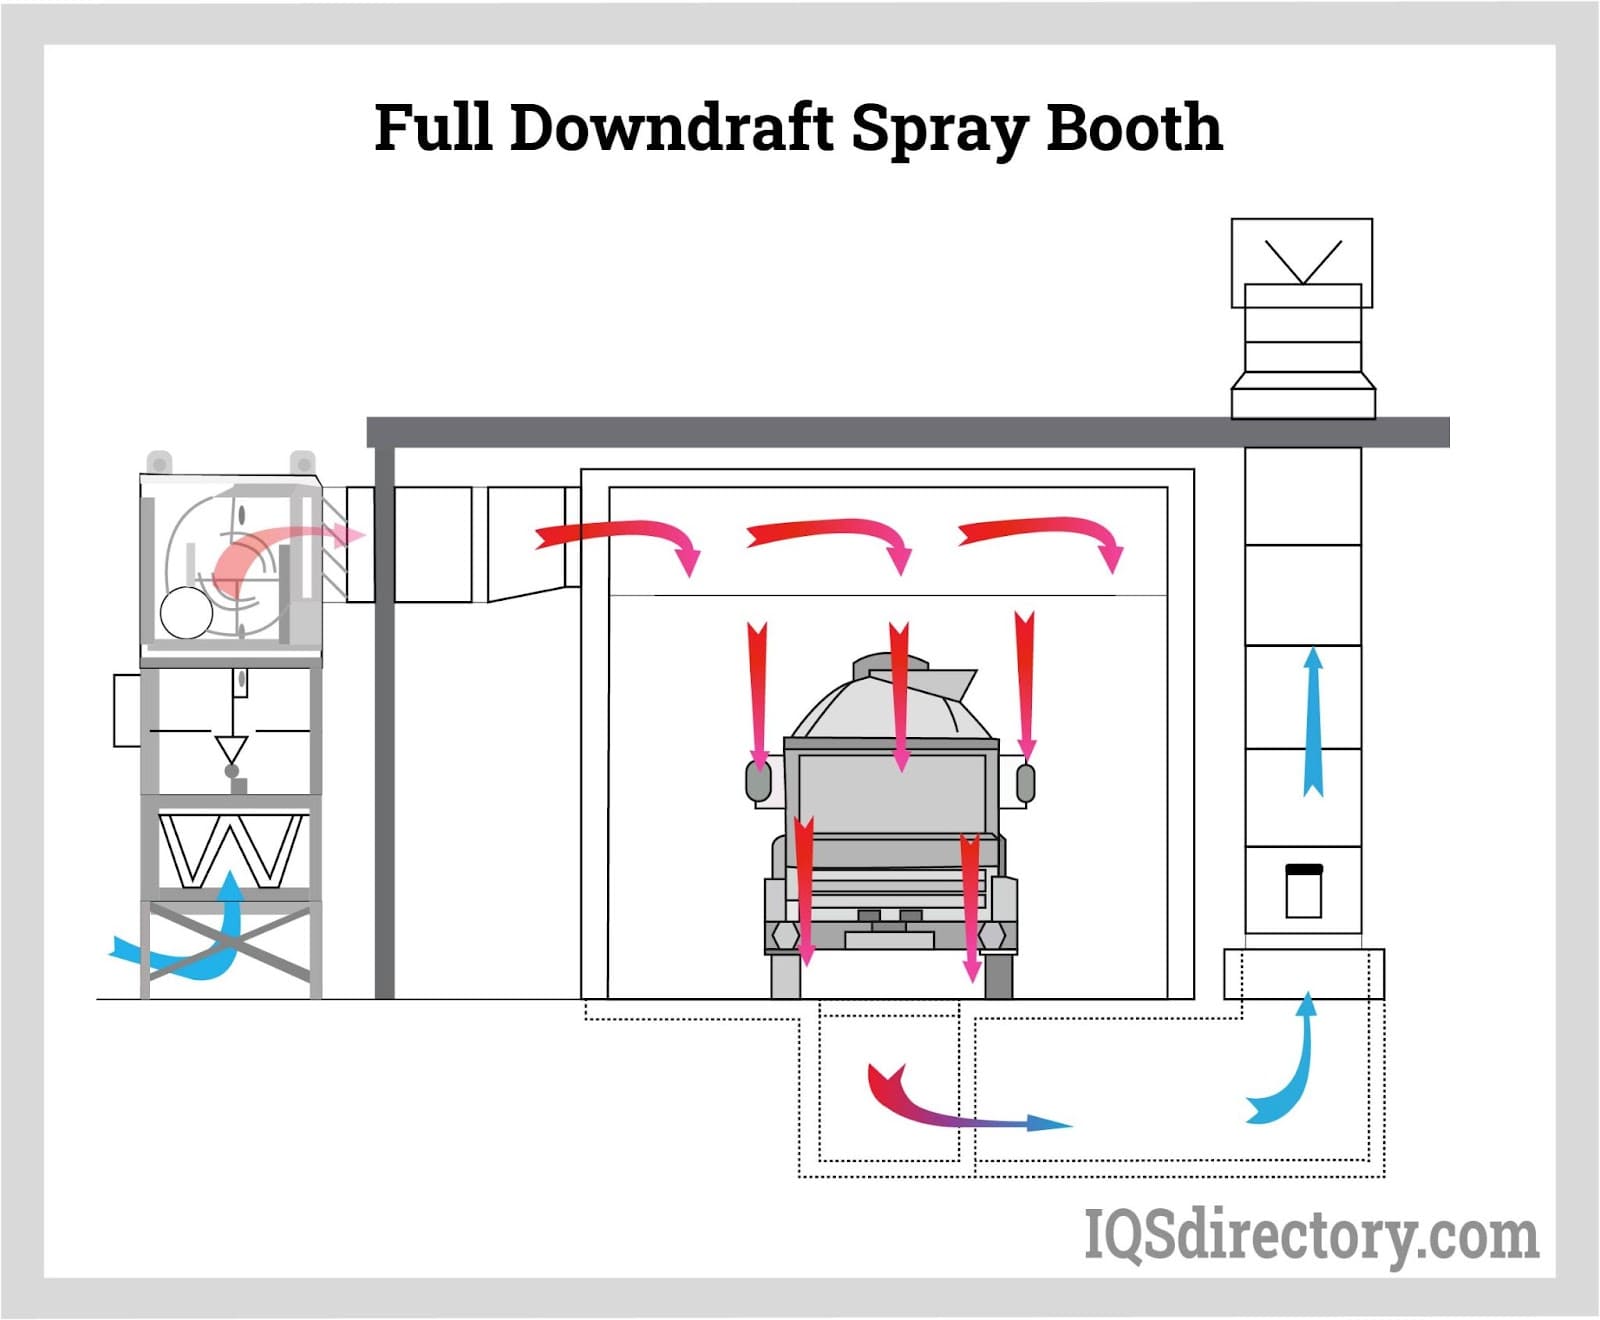  Full Downdraft Spray Booth